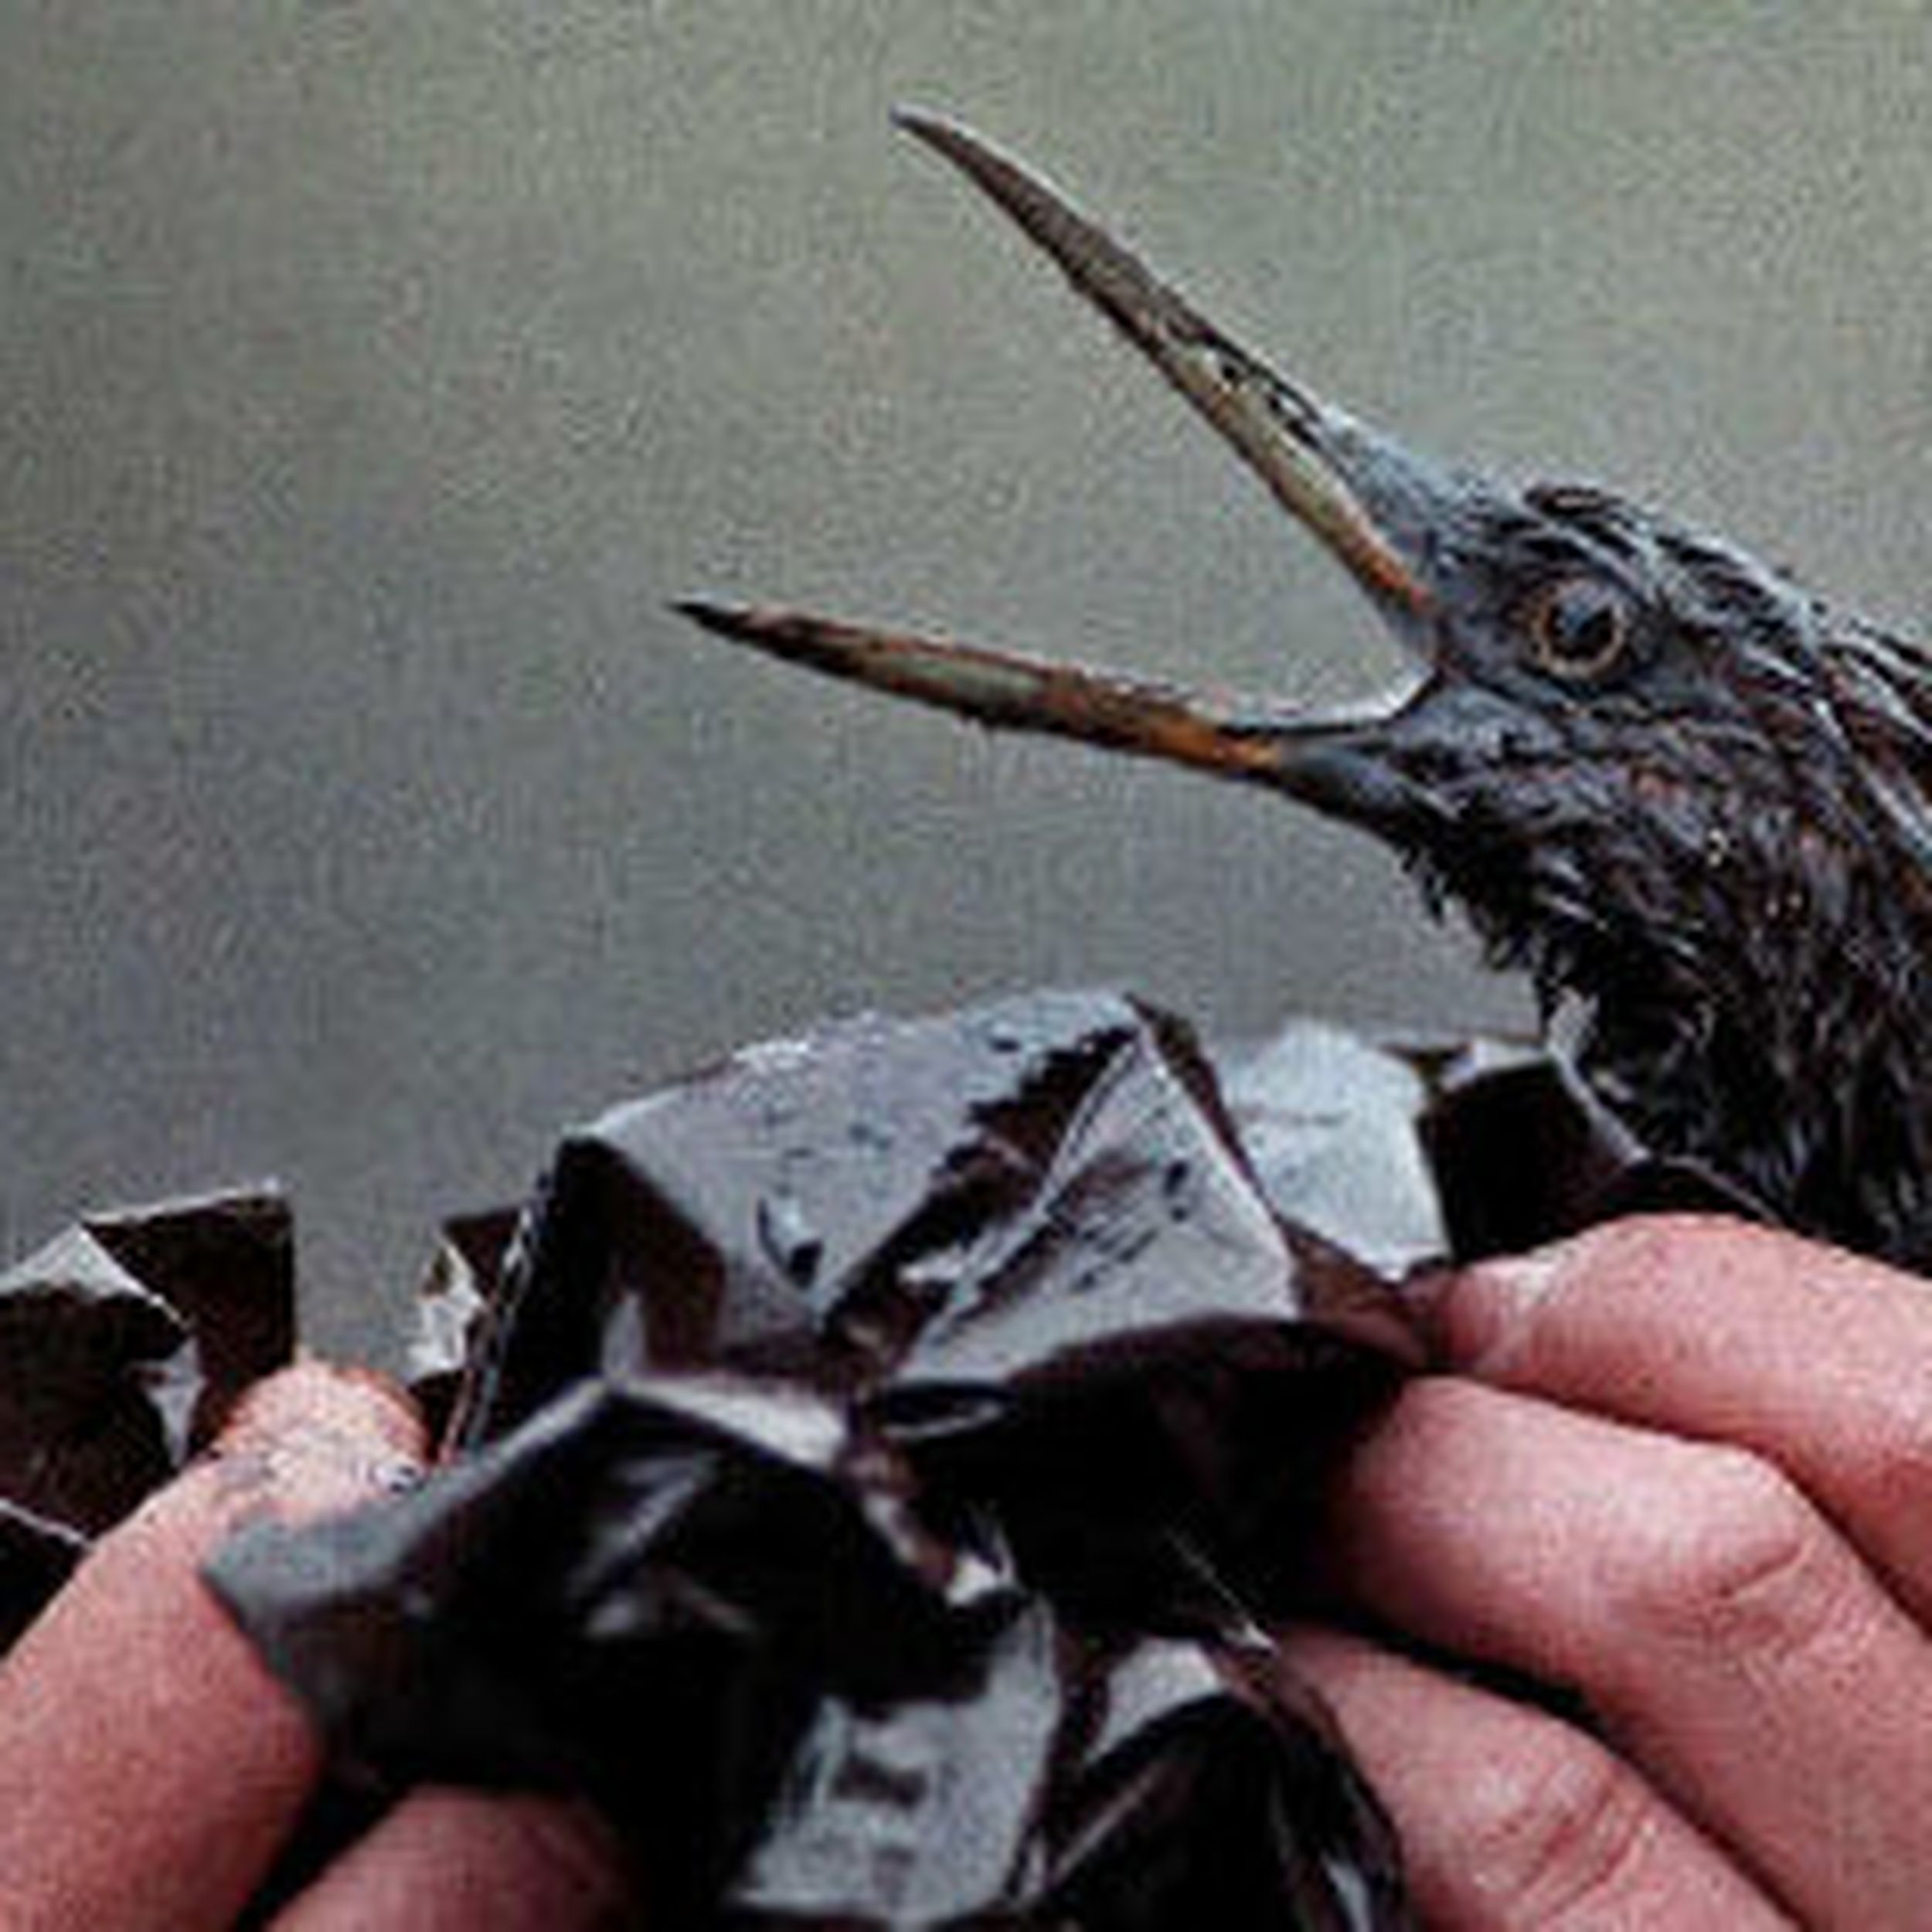 Keeble describes ecological horror of Exxon Valdez spill | The 